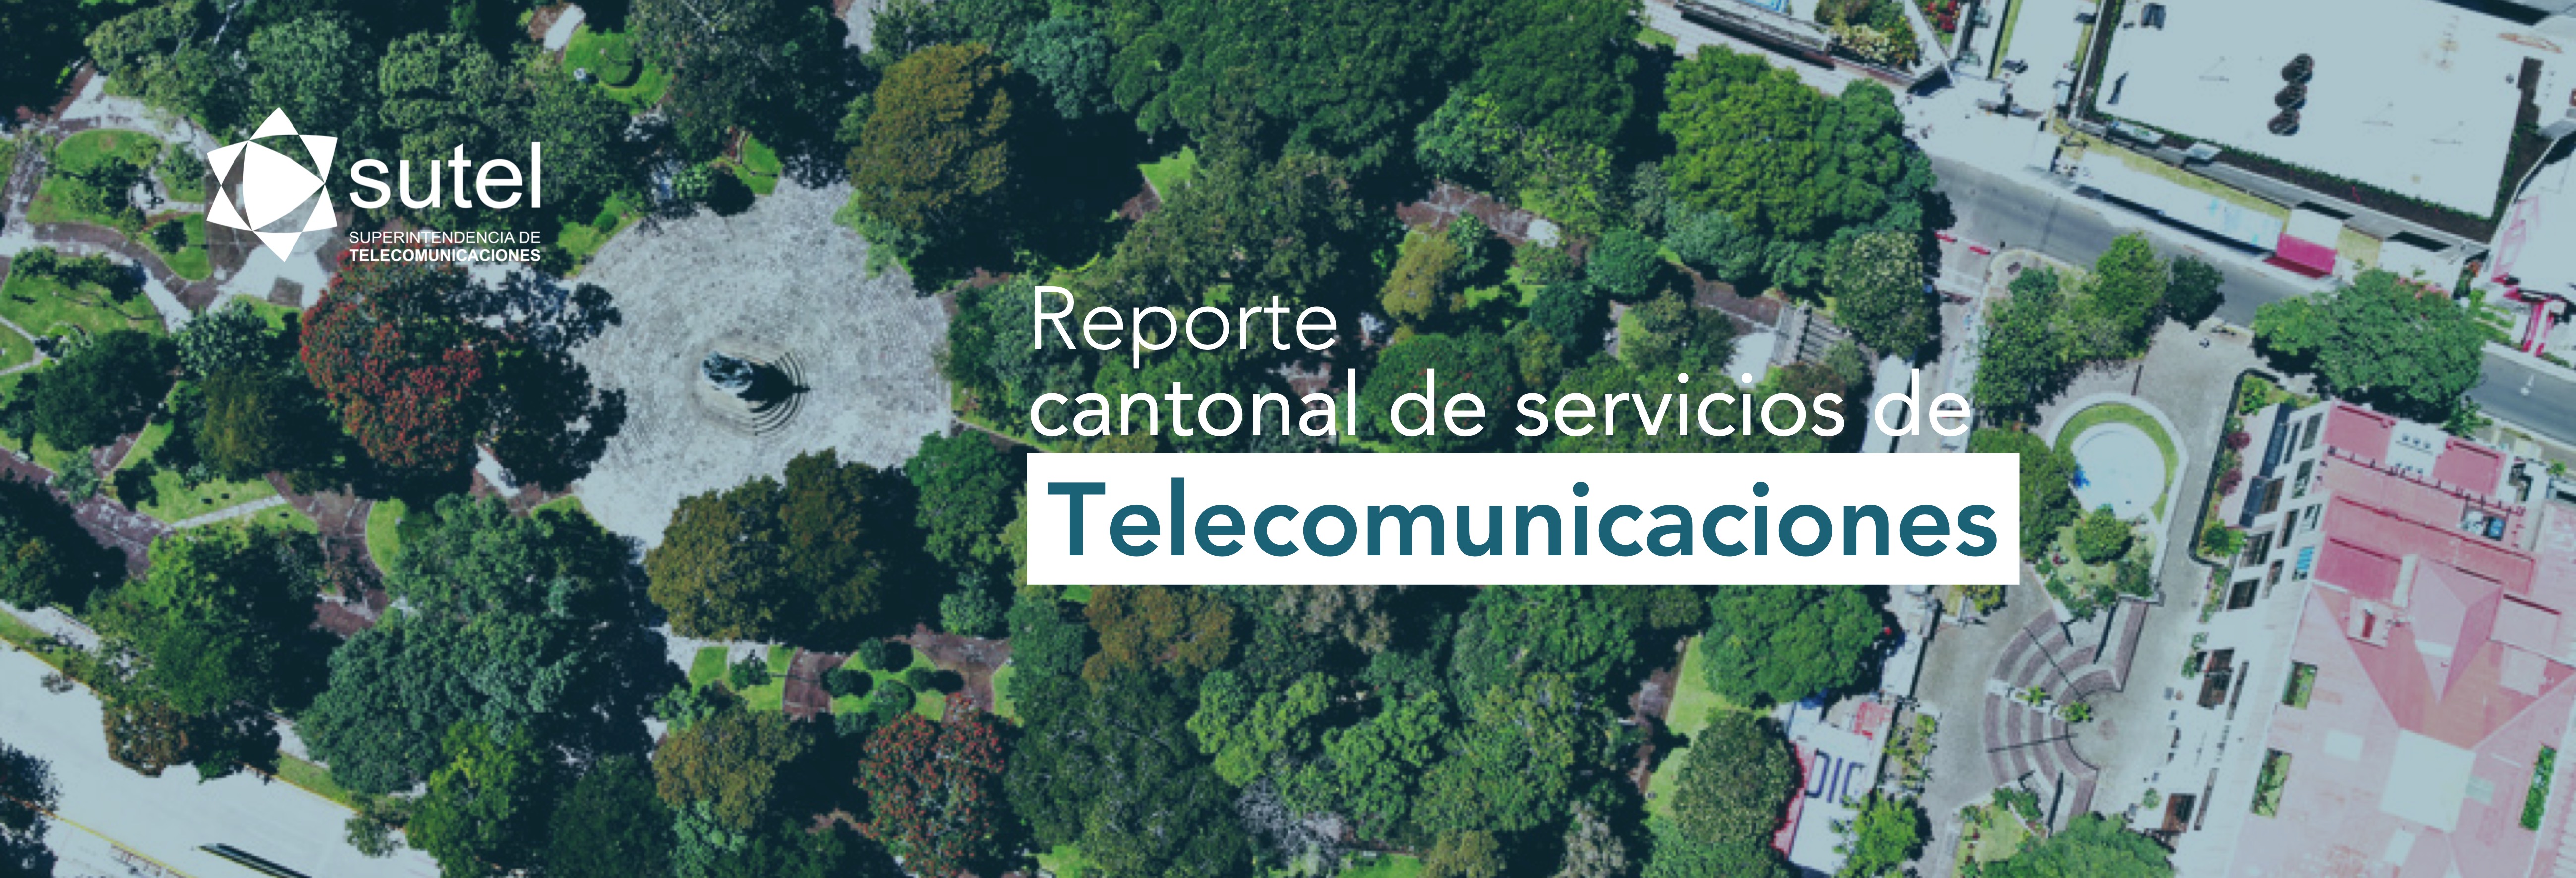 Banner Reporte Cantonal Telecomunicaciones